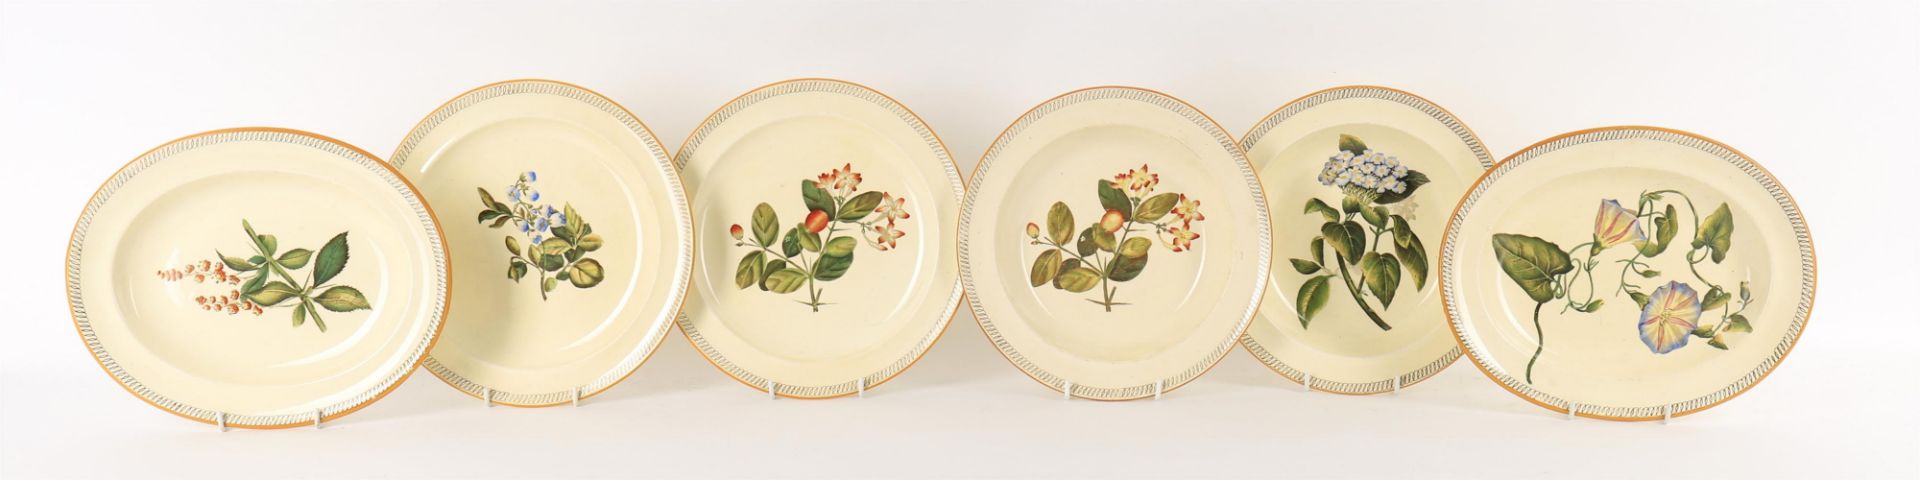 19th century Wedgwood botanical decorated creamware